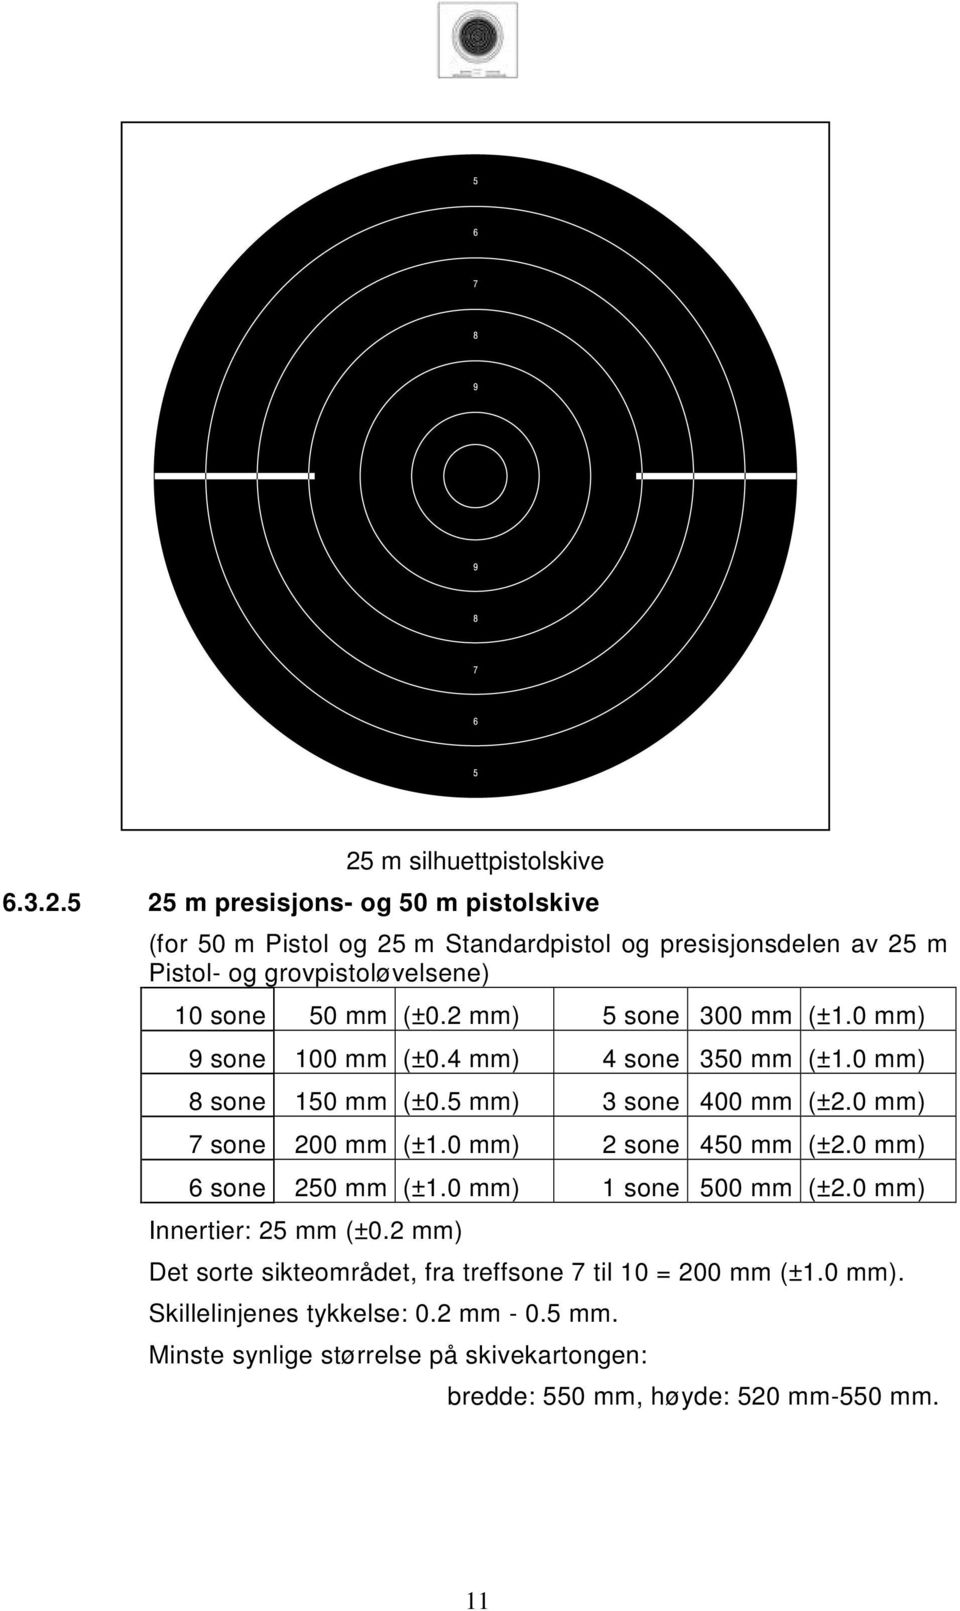 0 mm) 2 sone 450 mm (±2.0 mm) 6 sone 250 mm (±1.0 mm) 1 sone 500 mm (±2.0 mm) Innertier: 25 mm (±0.